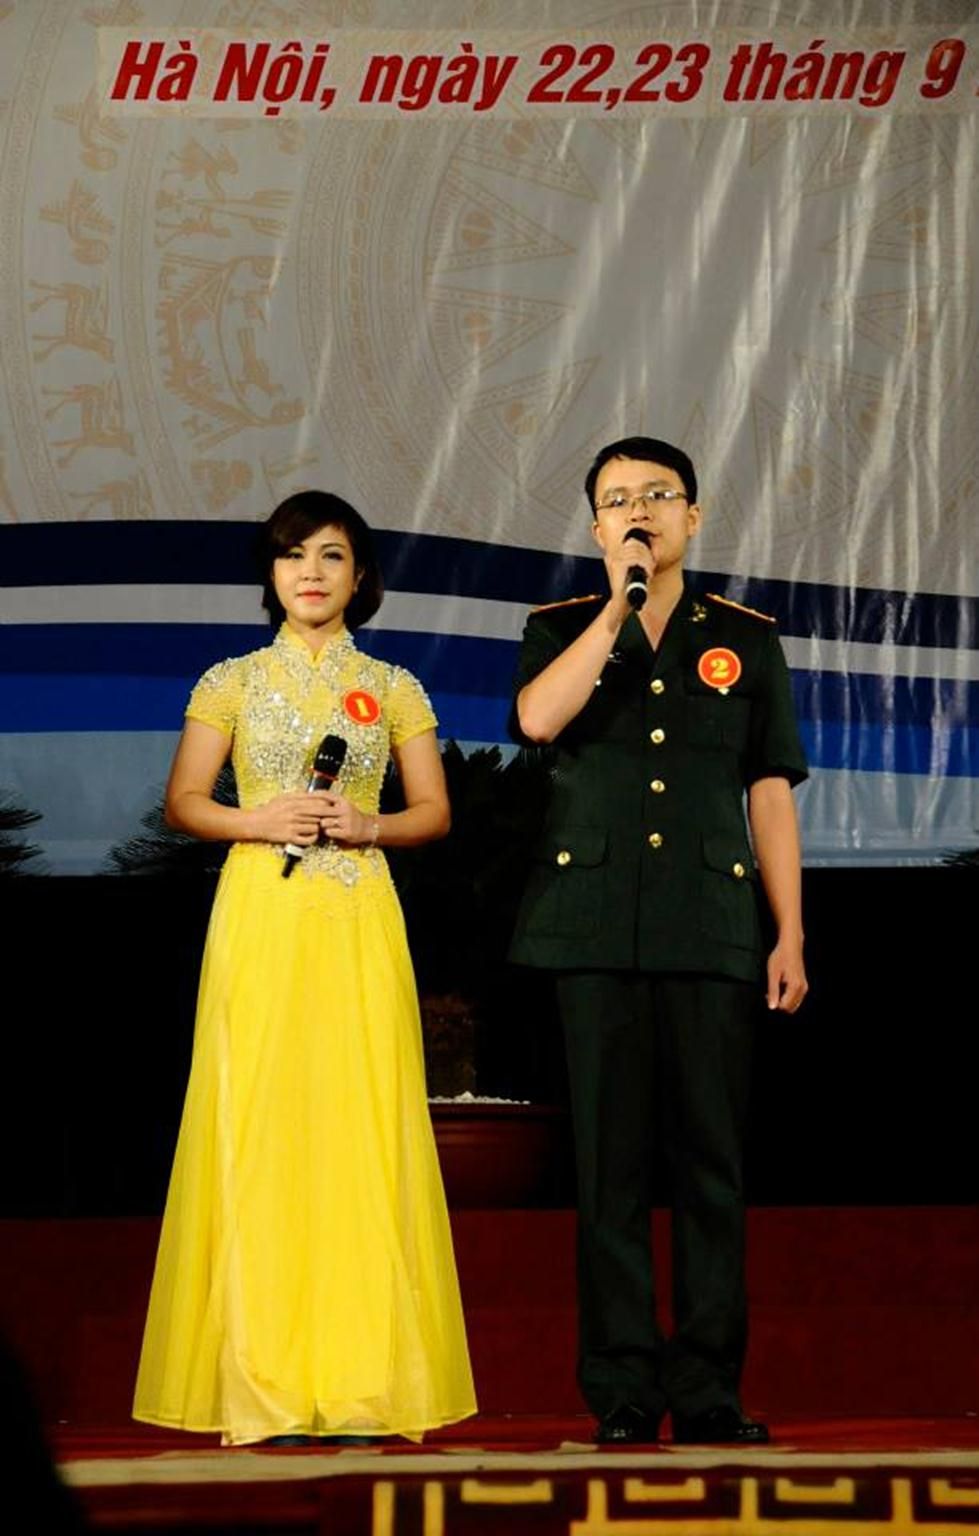 Không chỉ hát hay, Đại úy QNCN Bùi Thị Kim Dung còn thường xuyên xuất hiện với vai trò là MC của các chương trình